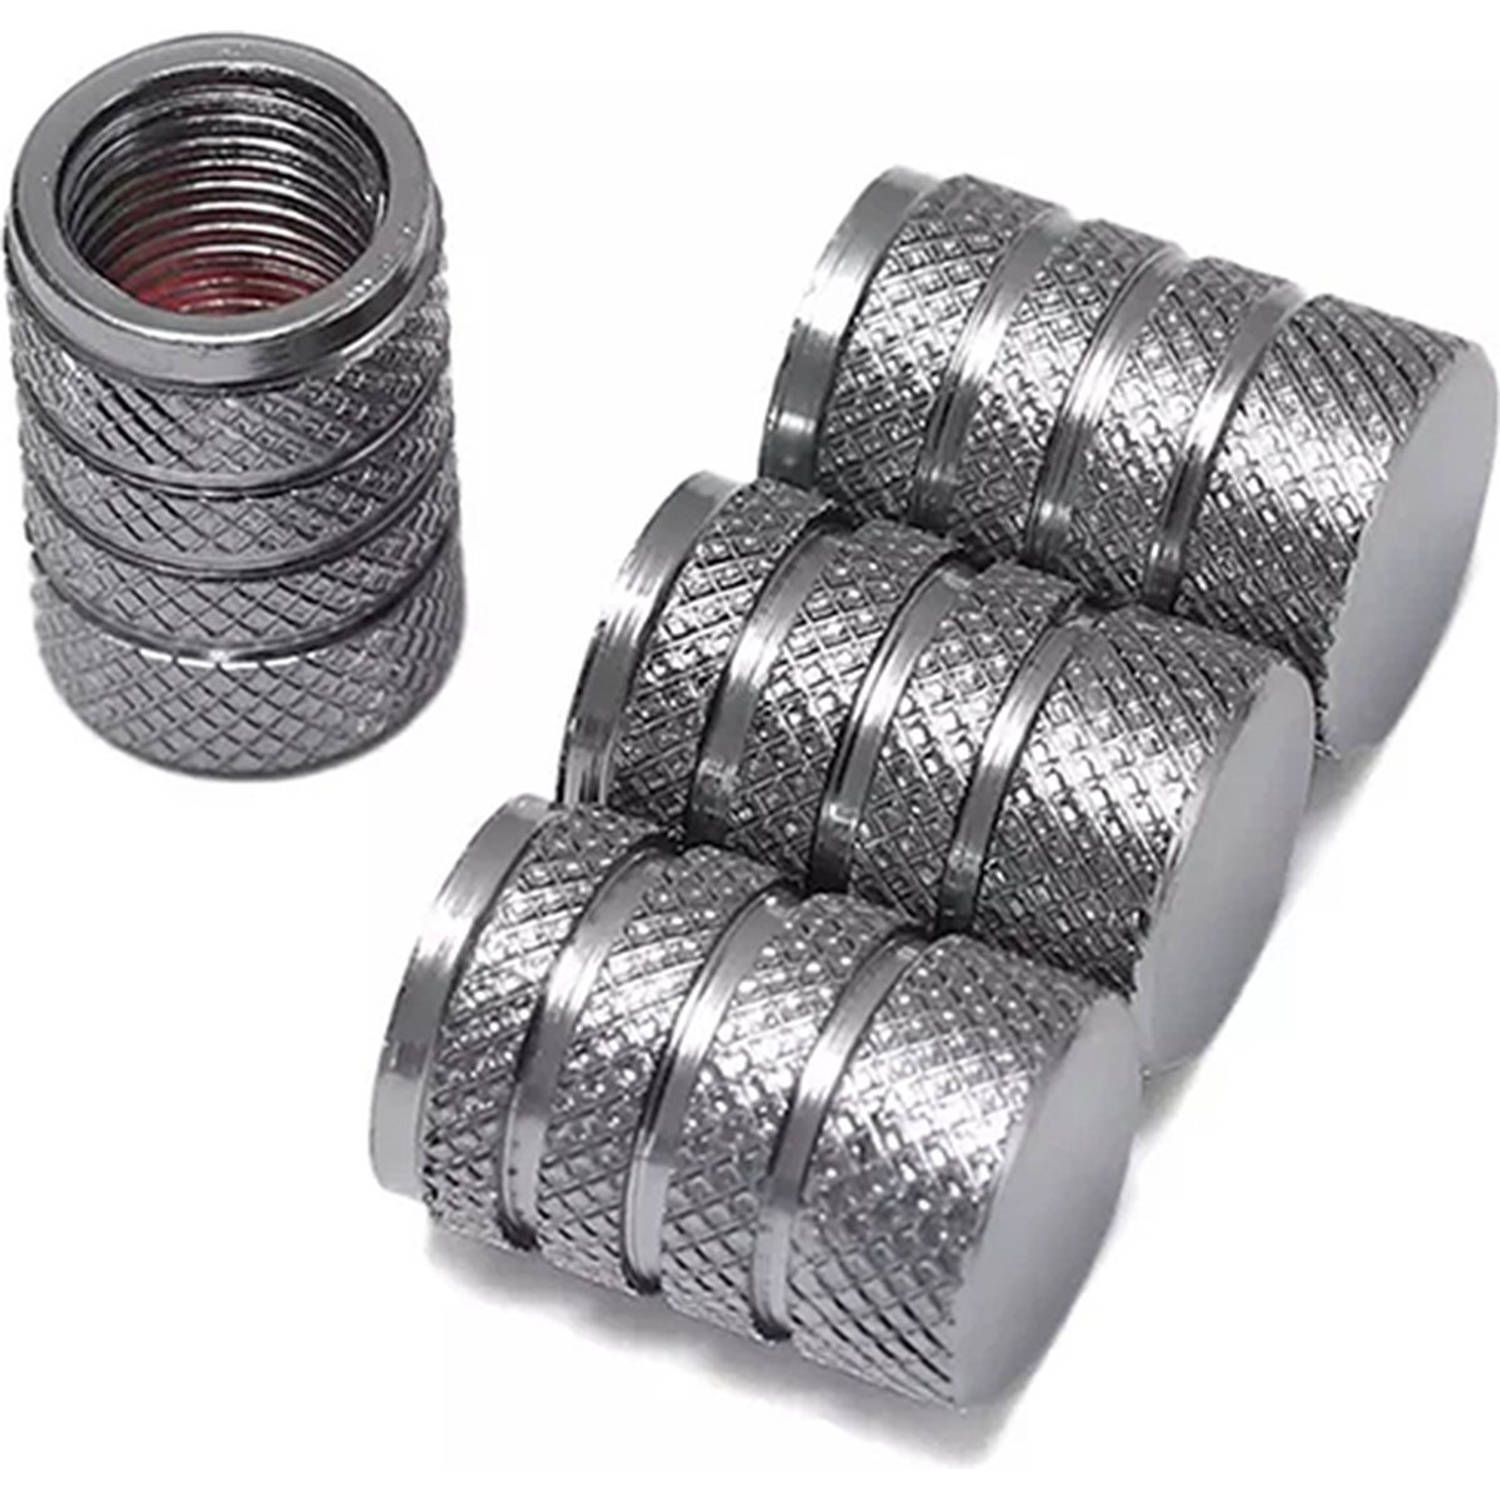 TT-products ventieldoppen 3-rings Grey aluminium 4 stuks grijs auto ventieldop ventieldopjes